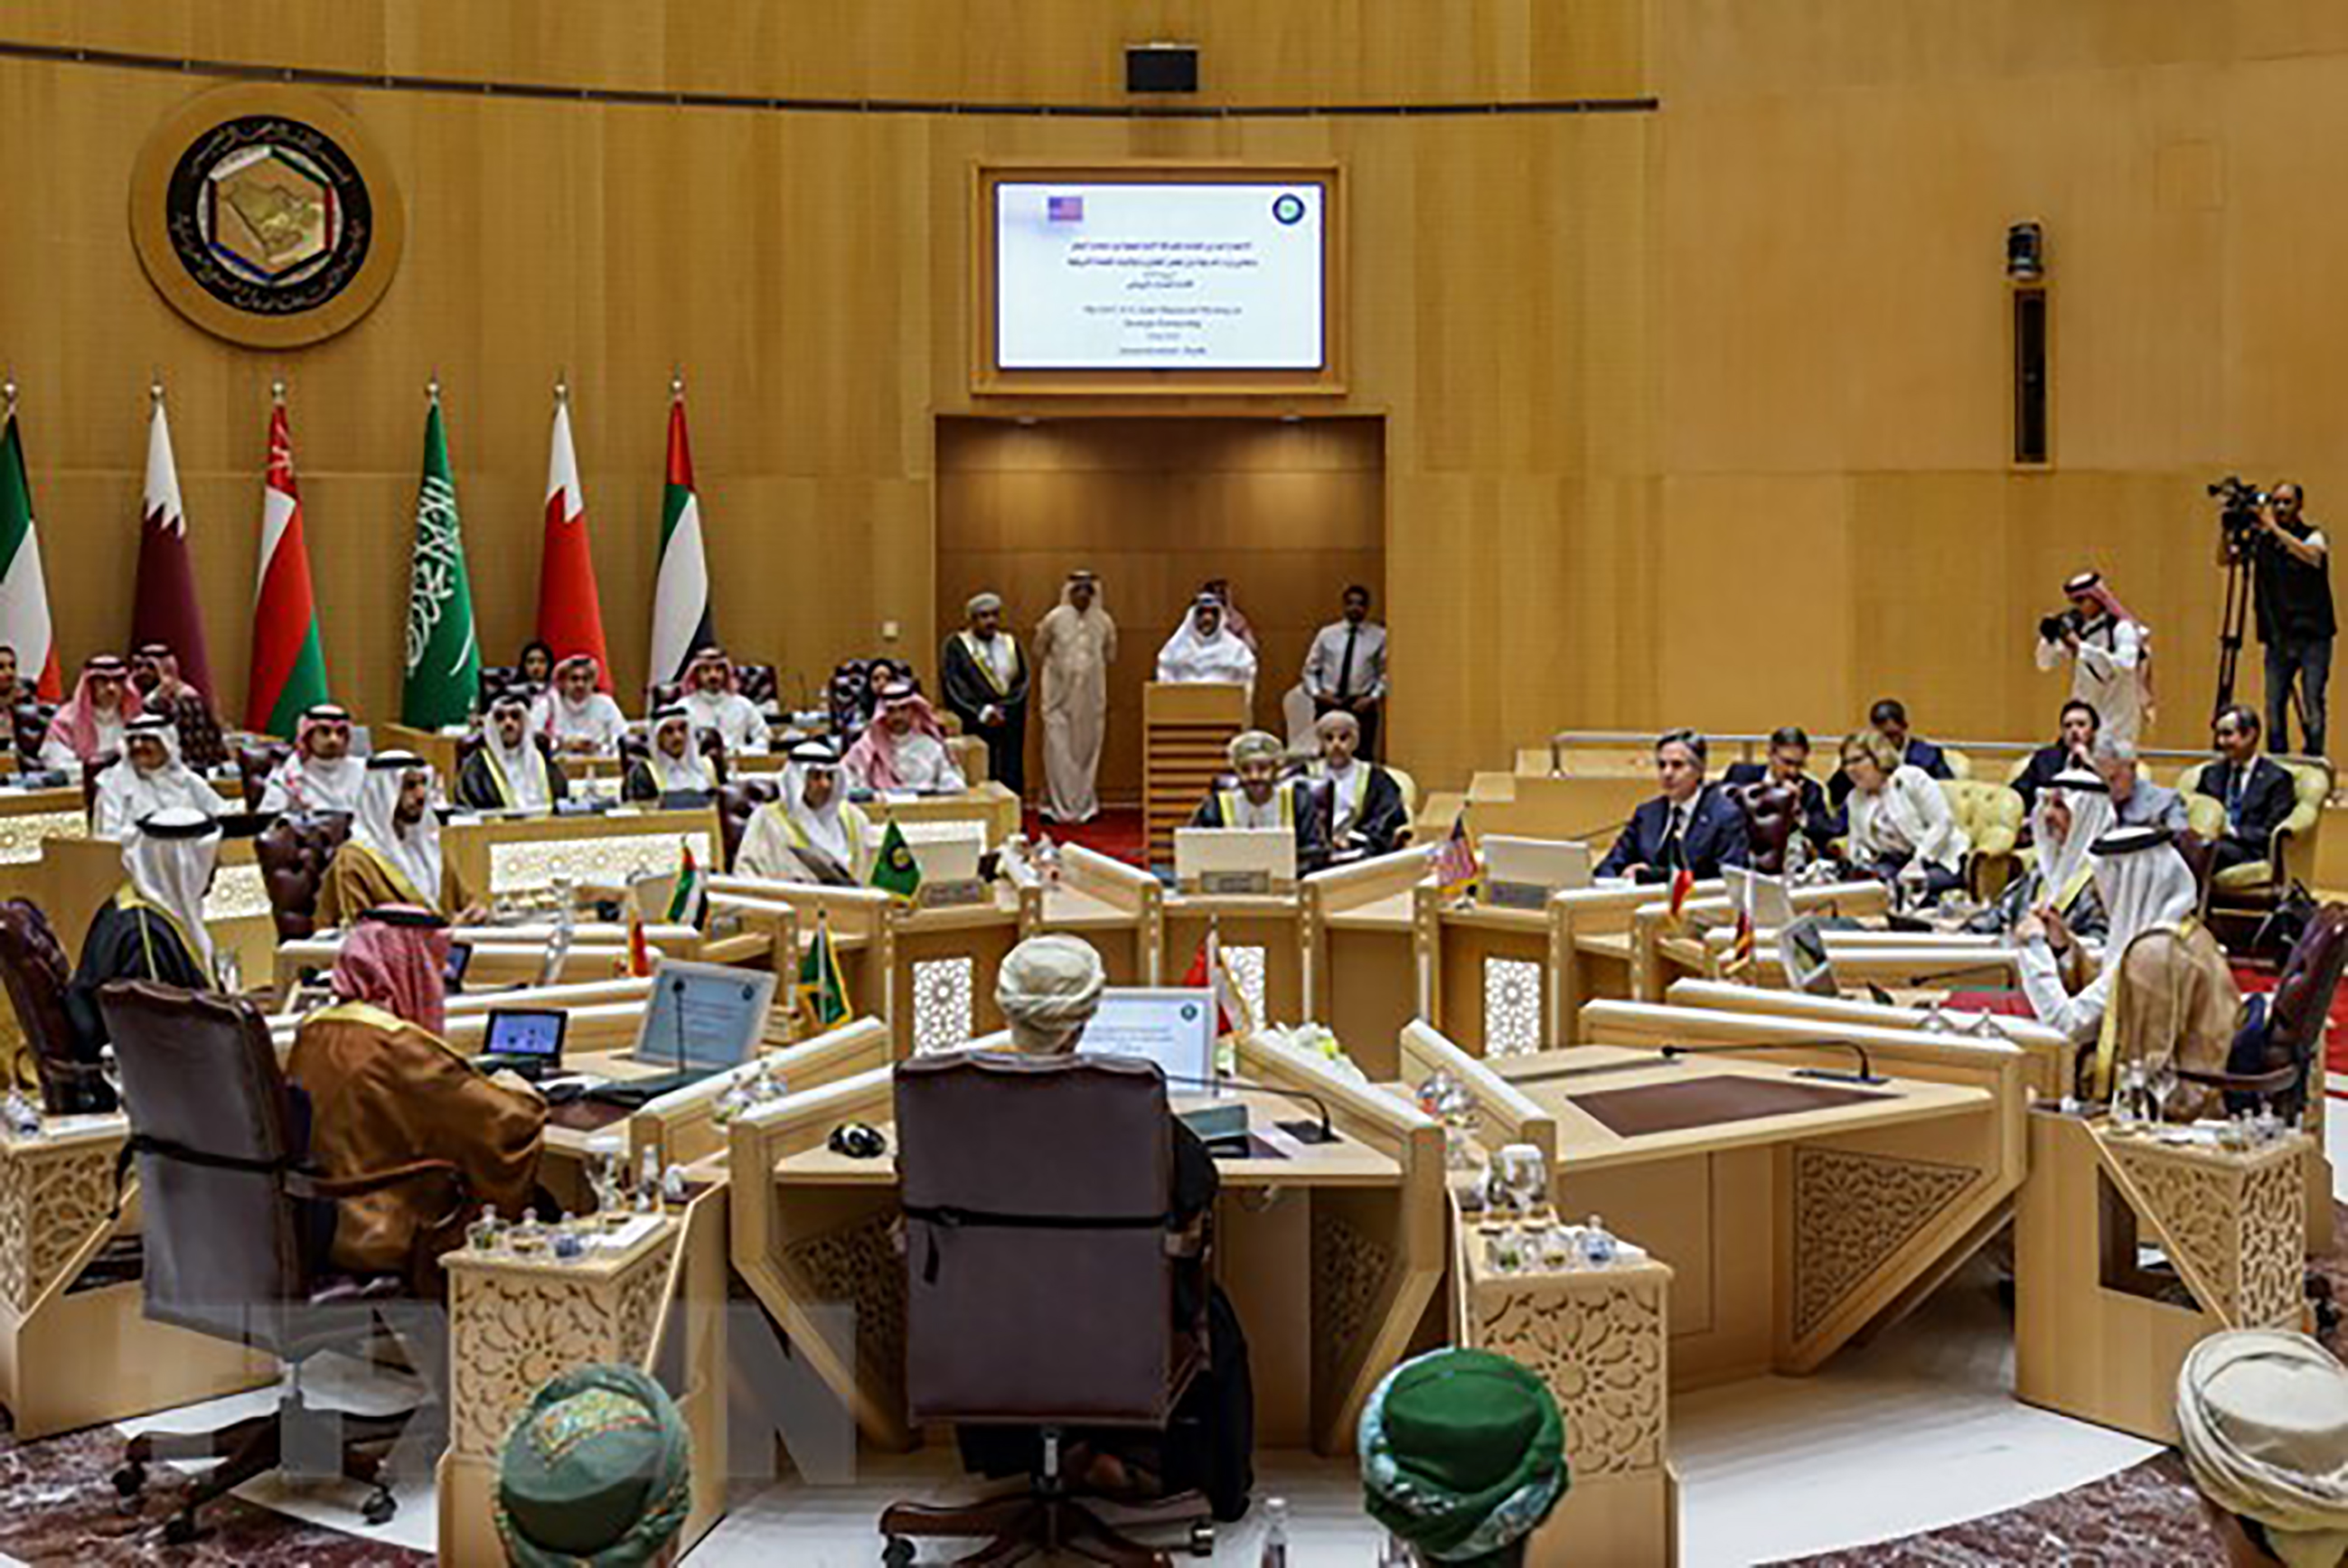 Toàn cảnh cuộc họp cấp Bộ trưởng Mỹ - Hội đồng Hợp tác vùng Vịnh (GCC) tại Riyadh, Saudi Arabia.